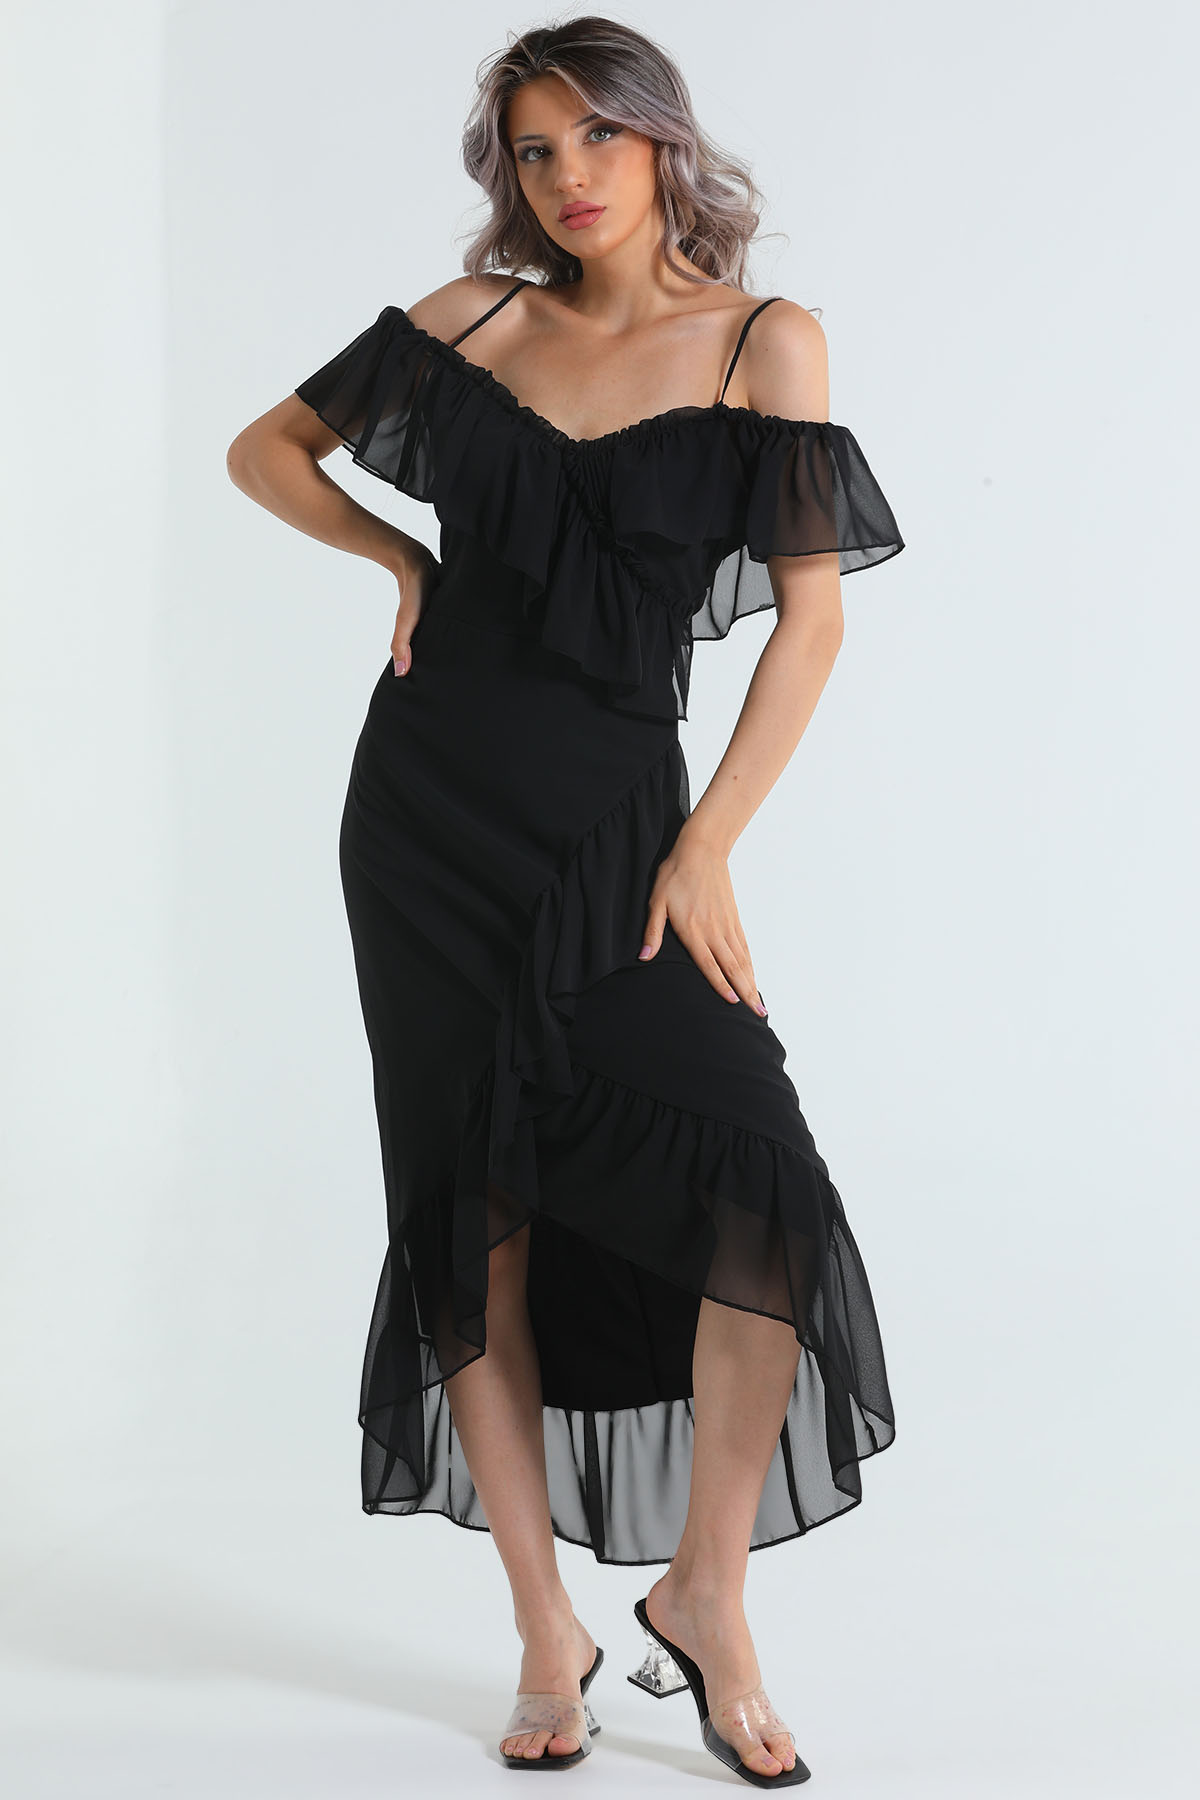 Kadın Askılı Fırfırlı Şifon Elbise Siyah 503043 - tozlu.com